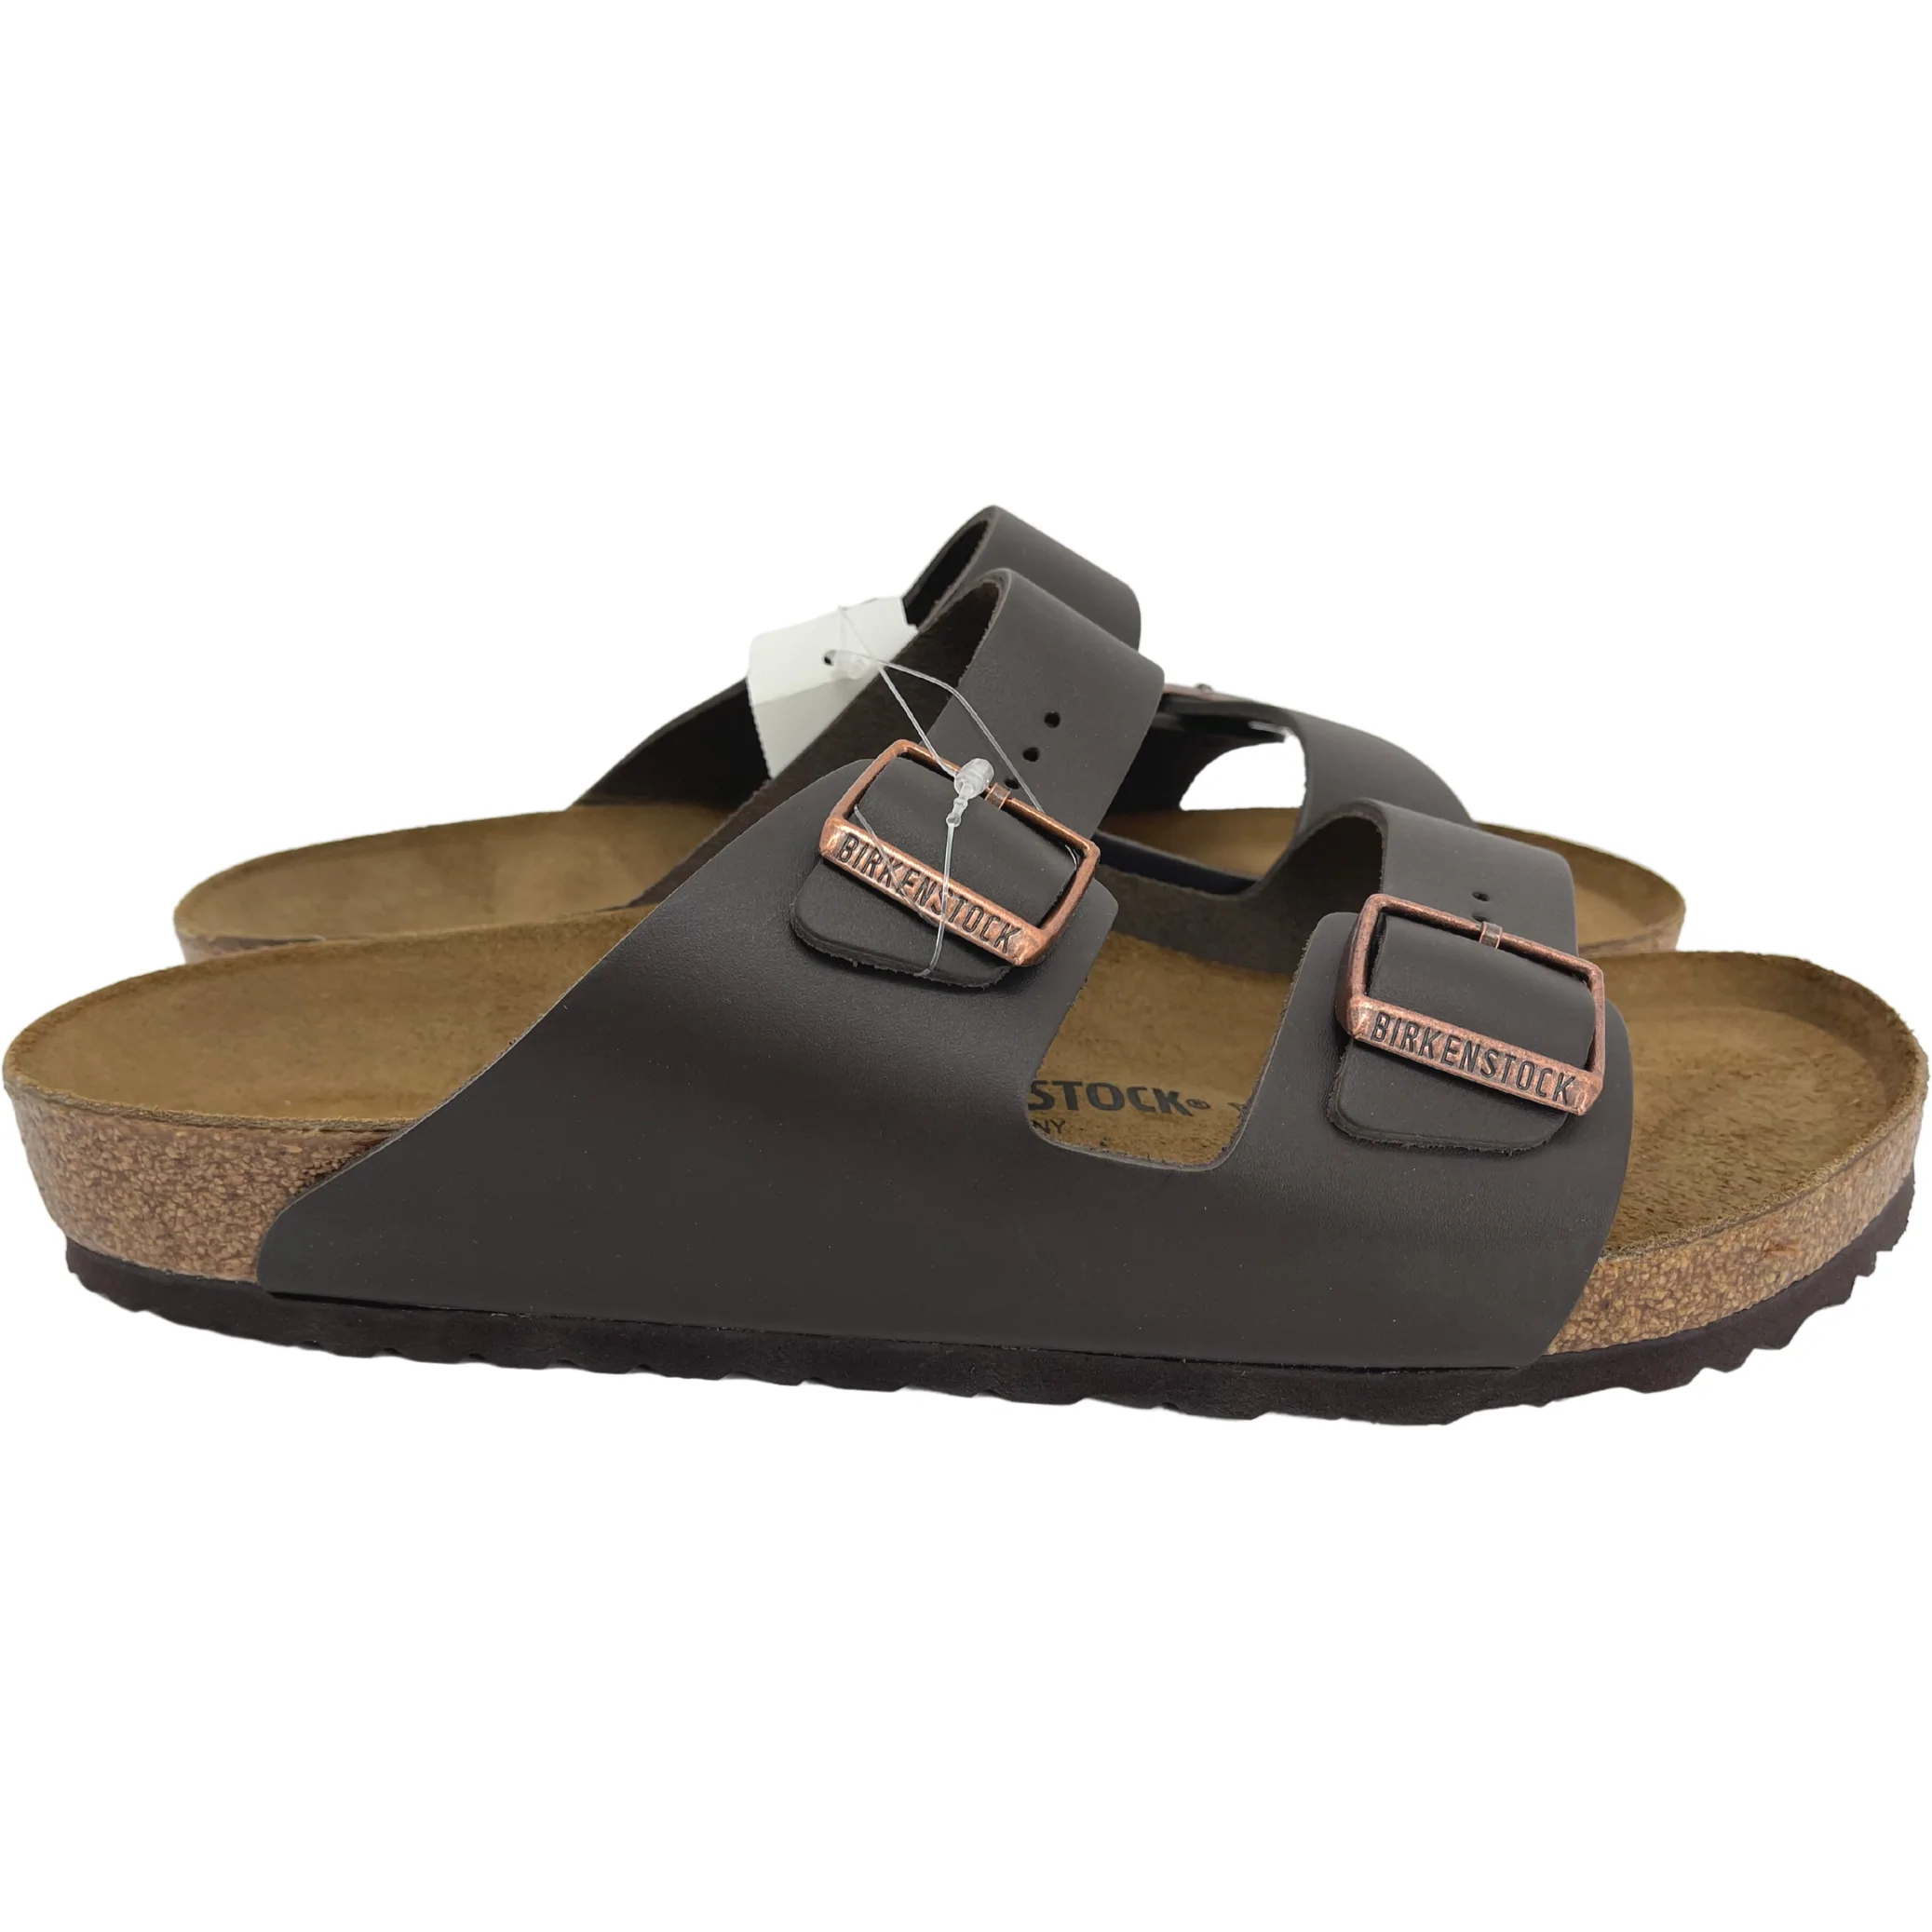 Birkenstock Arizona BS Men's Sandals / Dark Brown / Size 13